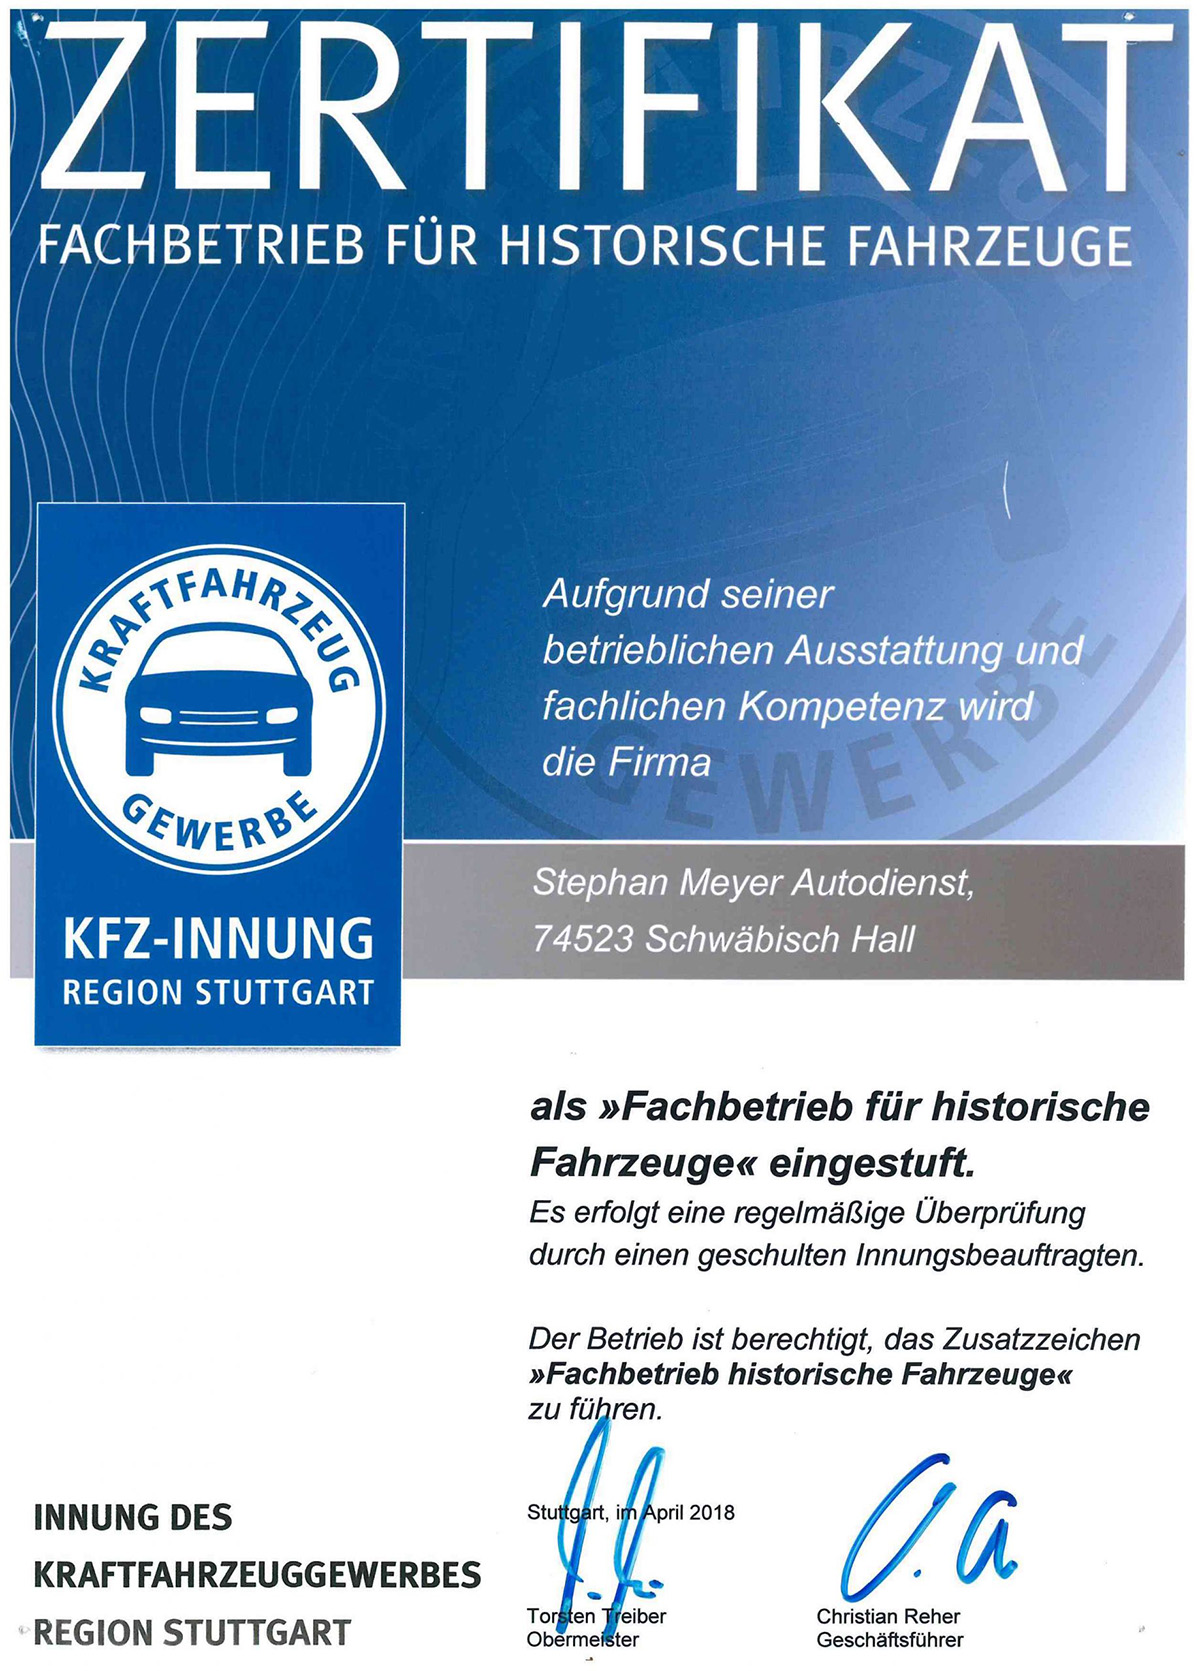 Zertifikat der KFZ-Innung als Fachbetrieb historische Fahrzeuge